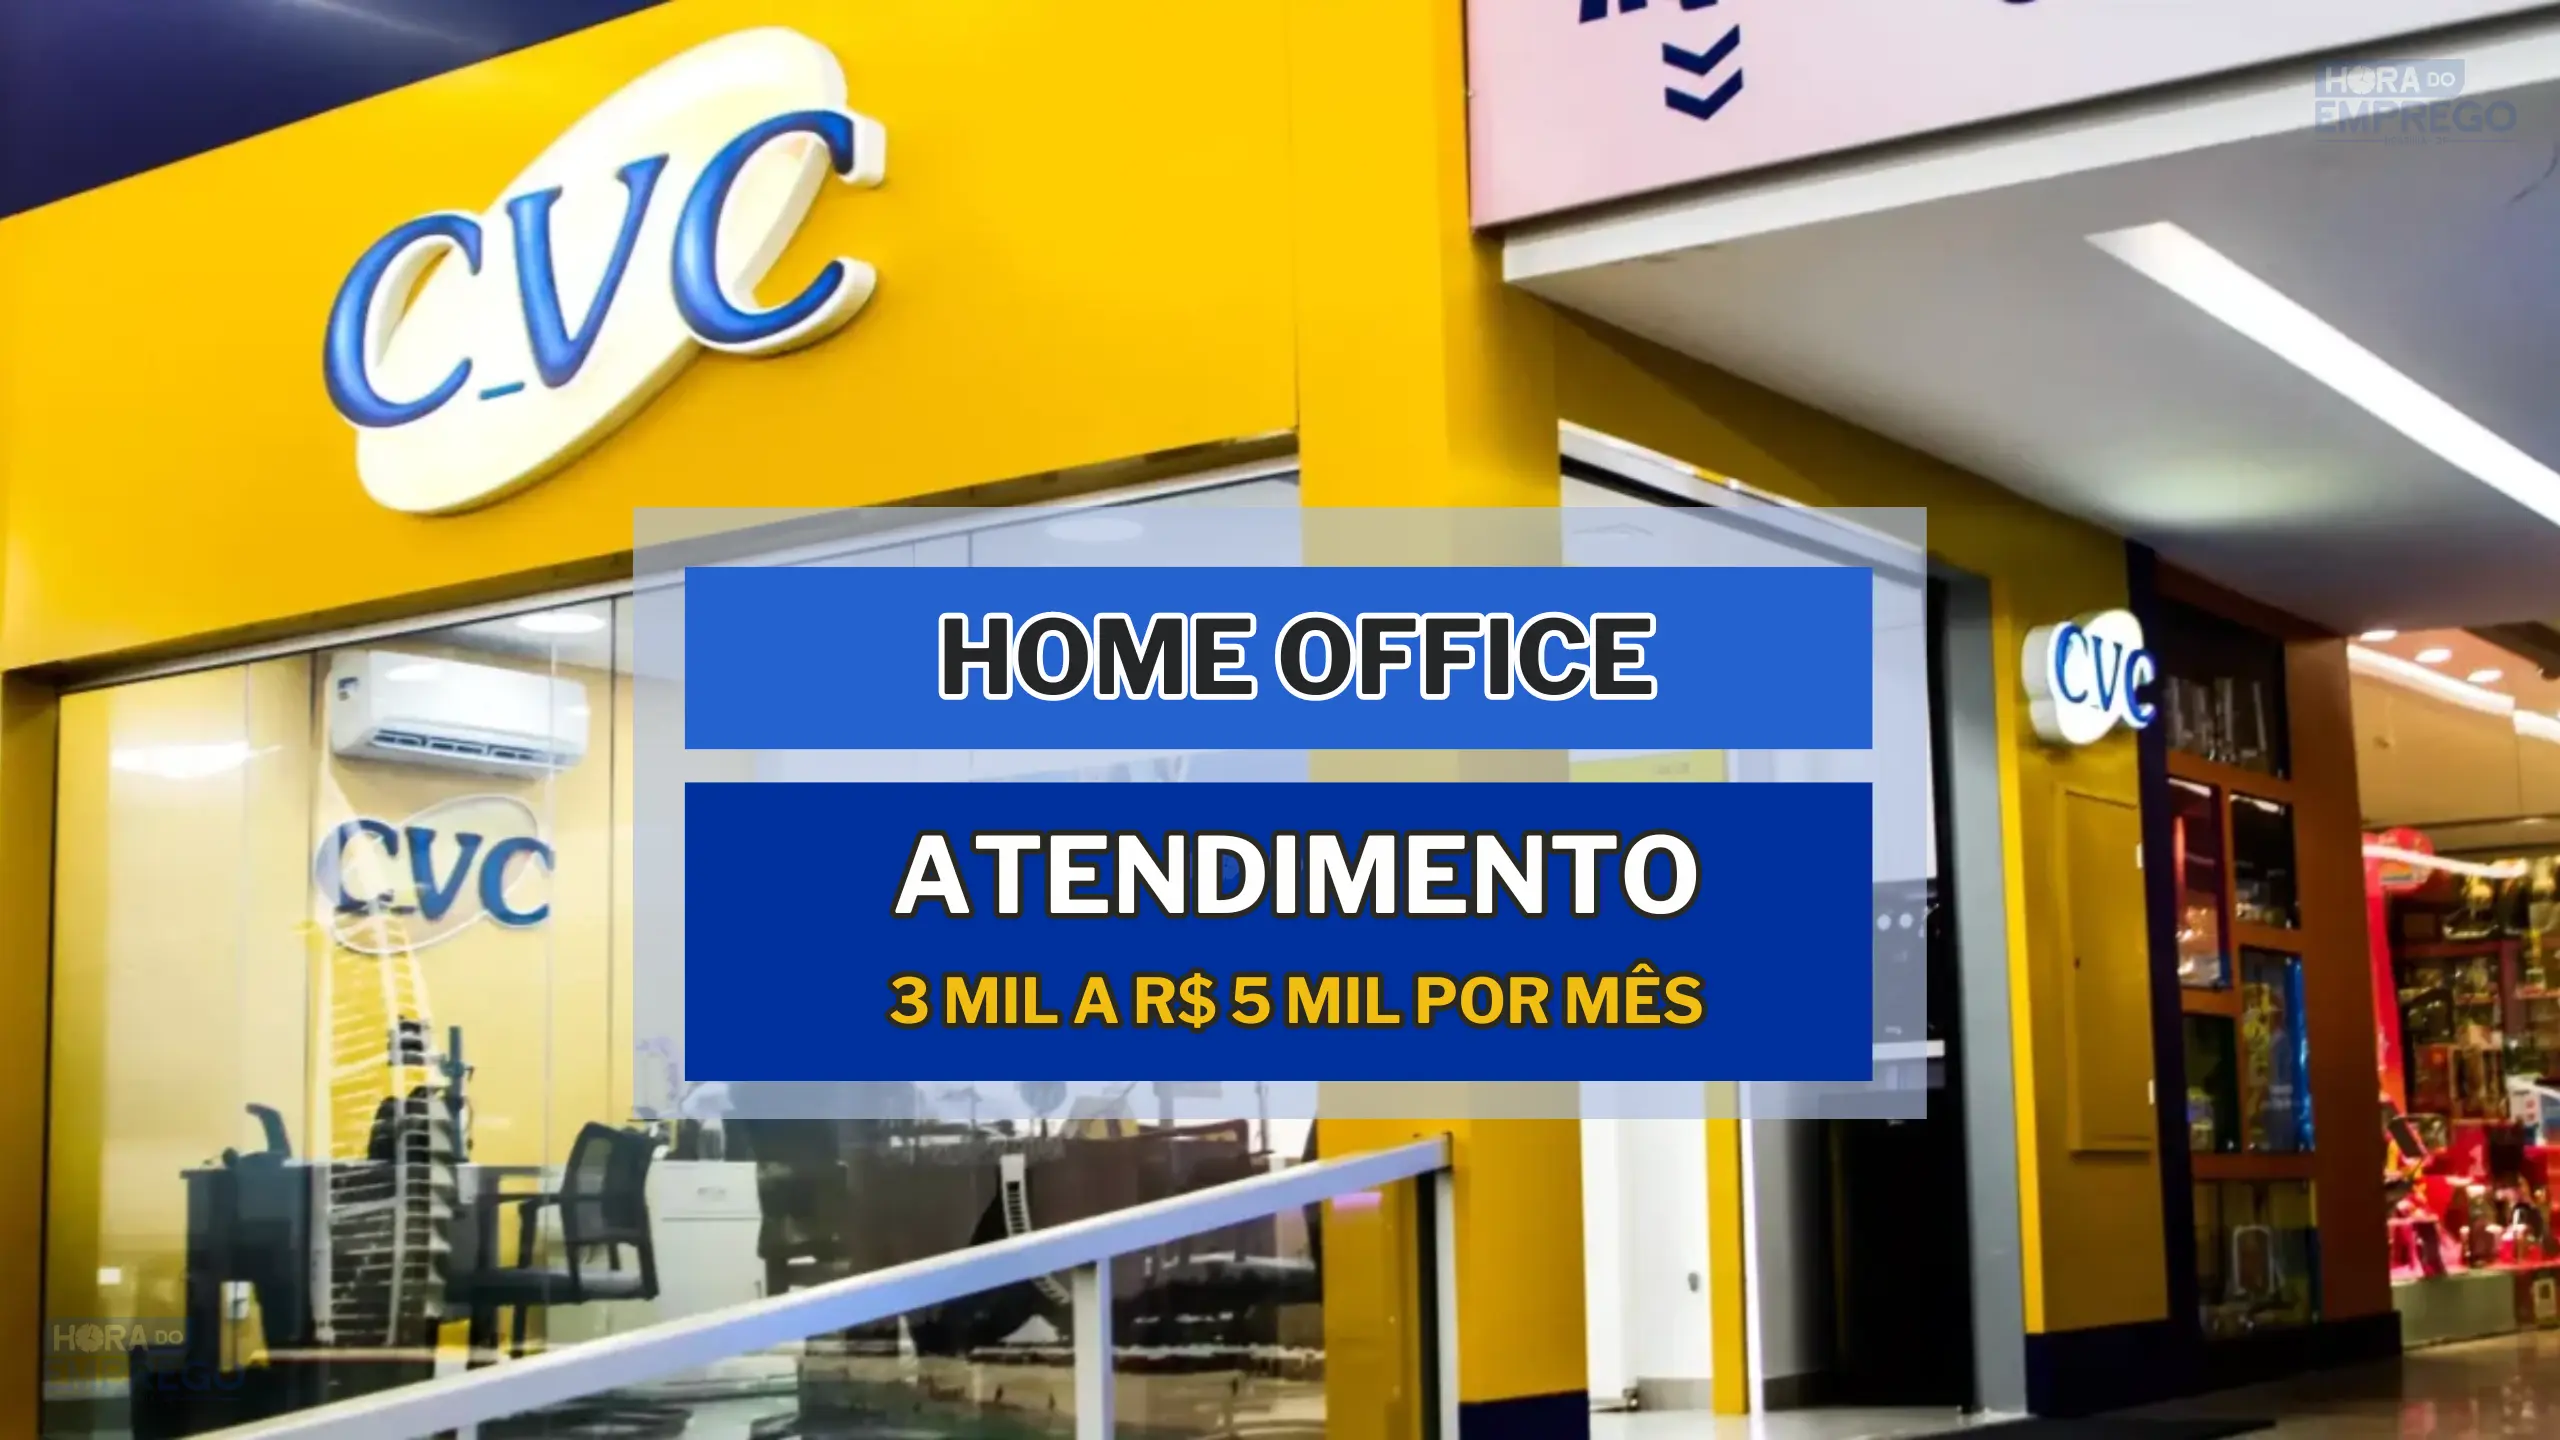 CVC Corp anuncia vaga HOME OFFICE para Consultor de Atendimento Inter